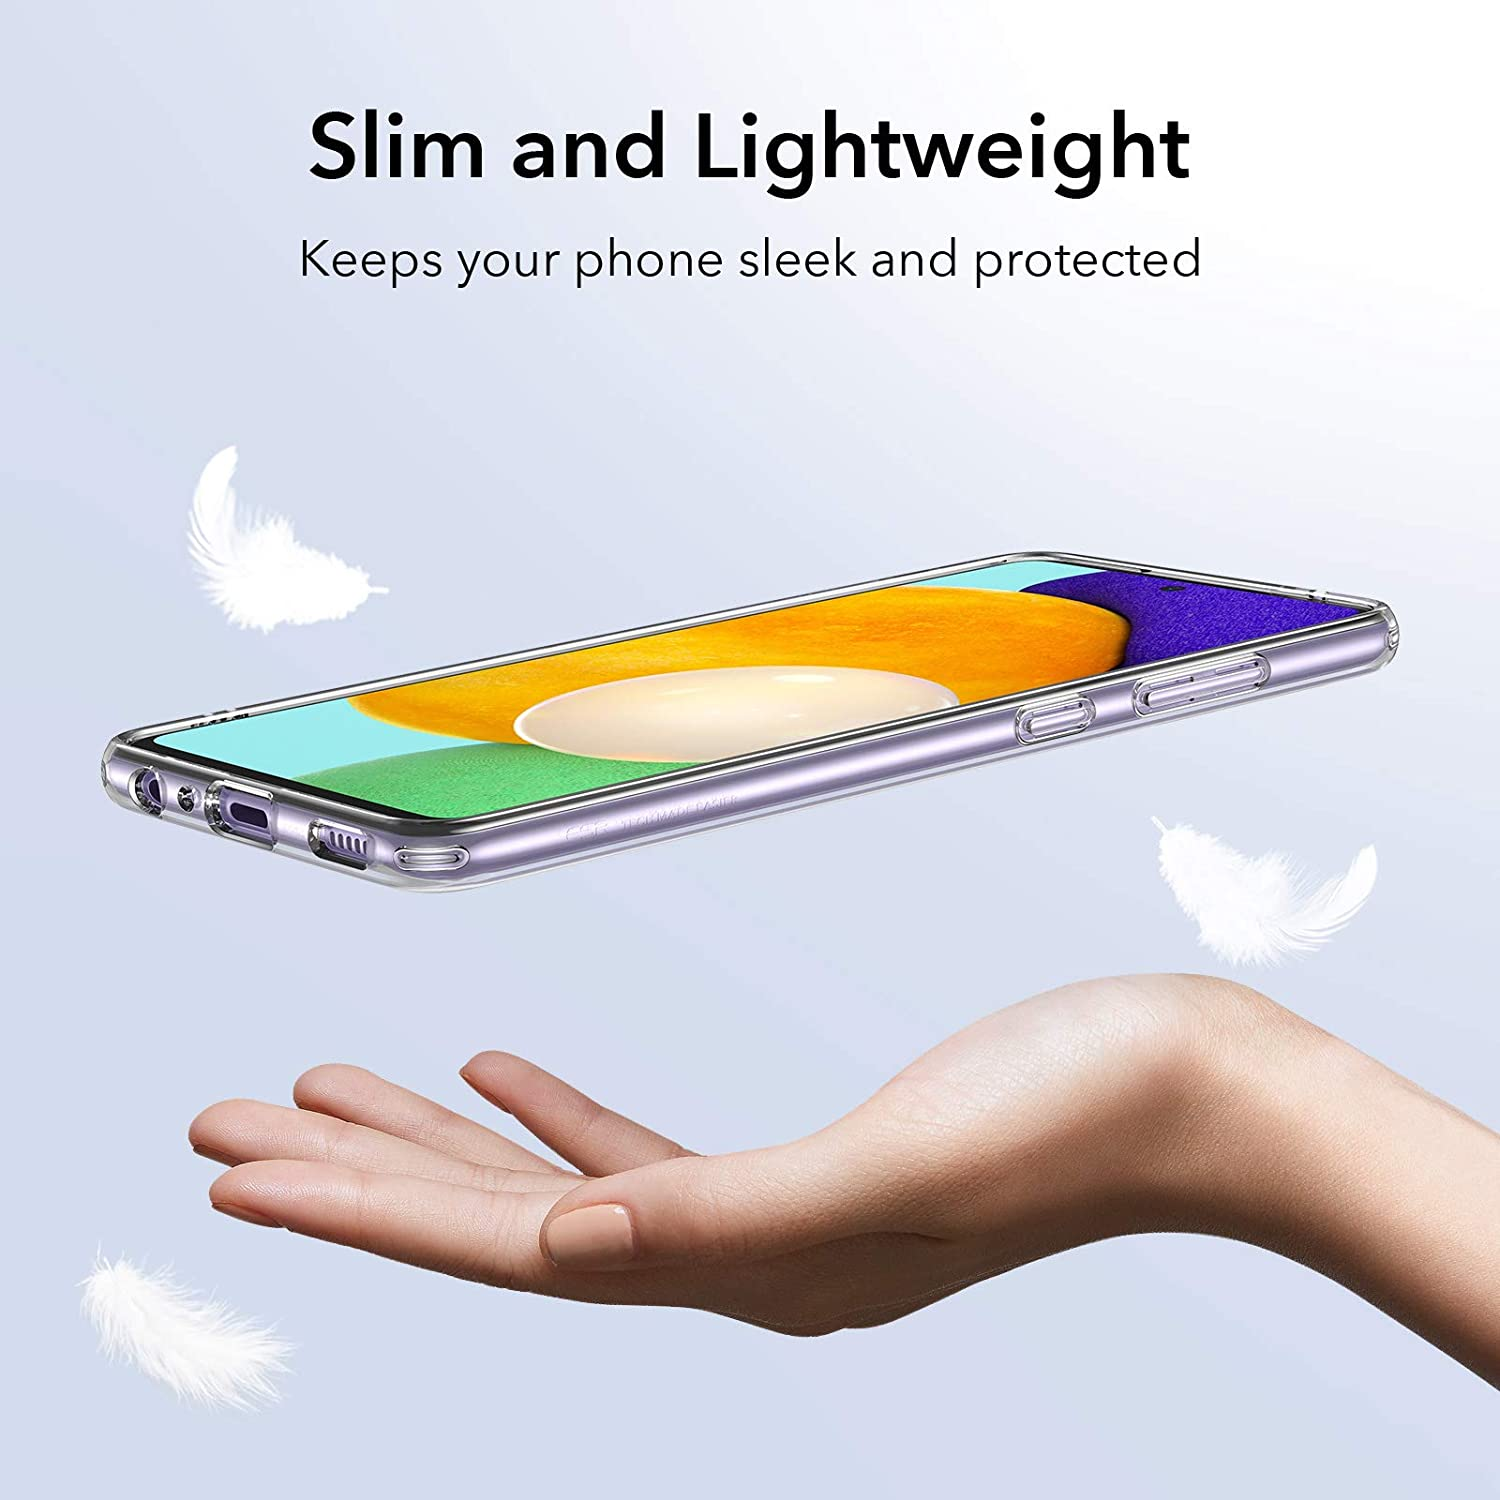 Ốp lưng silicon dẻo trong suốt cho Samsung Galaxy A52 / A52 5G / A52s hiệu Ultra Thin mỏng 0.6mm độ trong tuyệt đối chống trầy xước - Hàng nhập khẩu